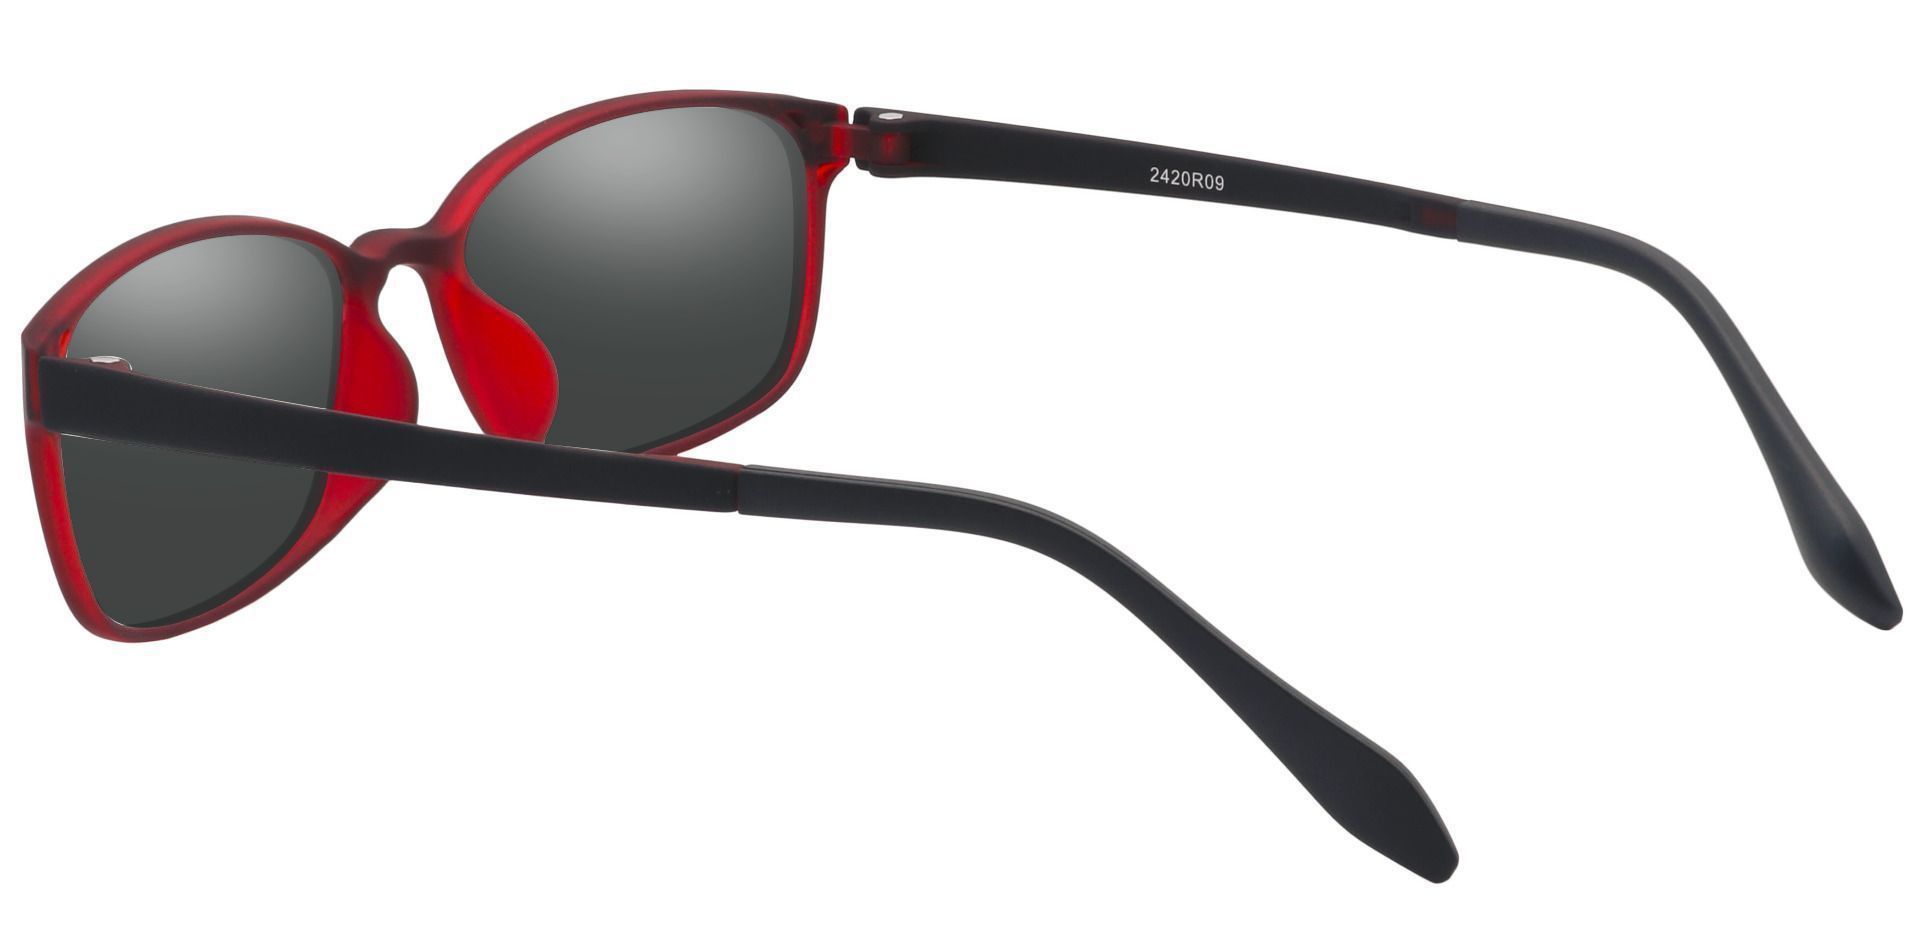 Merlot Rectangle Reading Sunglasses - Red Frame With Gray Lenses